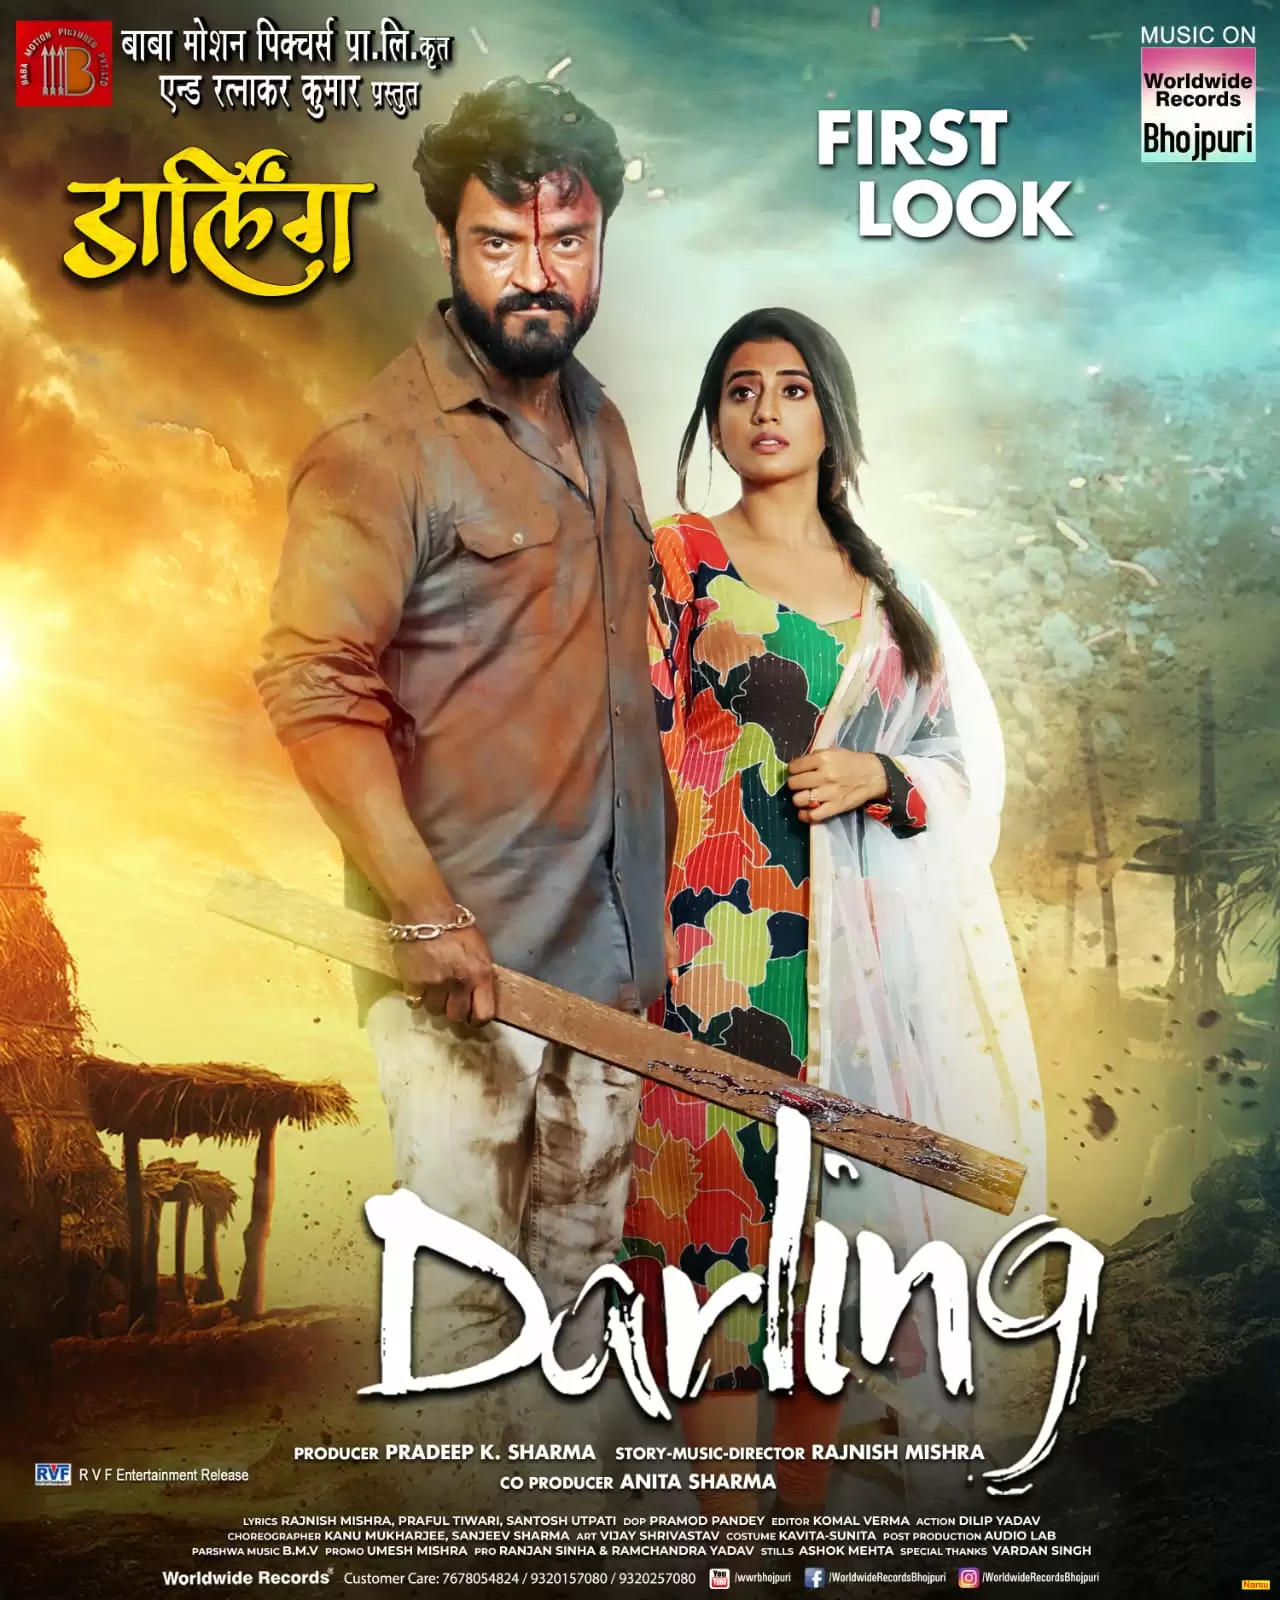 फिल्म के पोस्टर में राहुल शर्मा अपनी "डार्लिंग" अक्षरा सिंह के साथ आए नजर